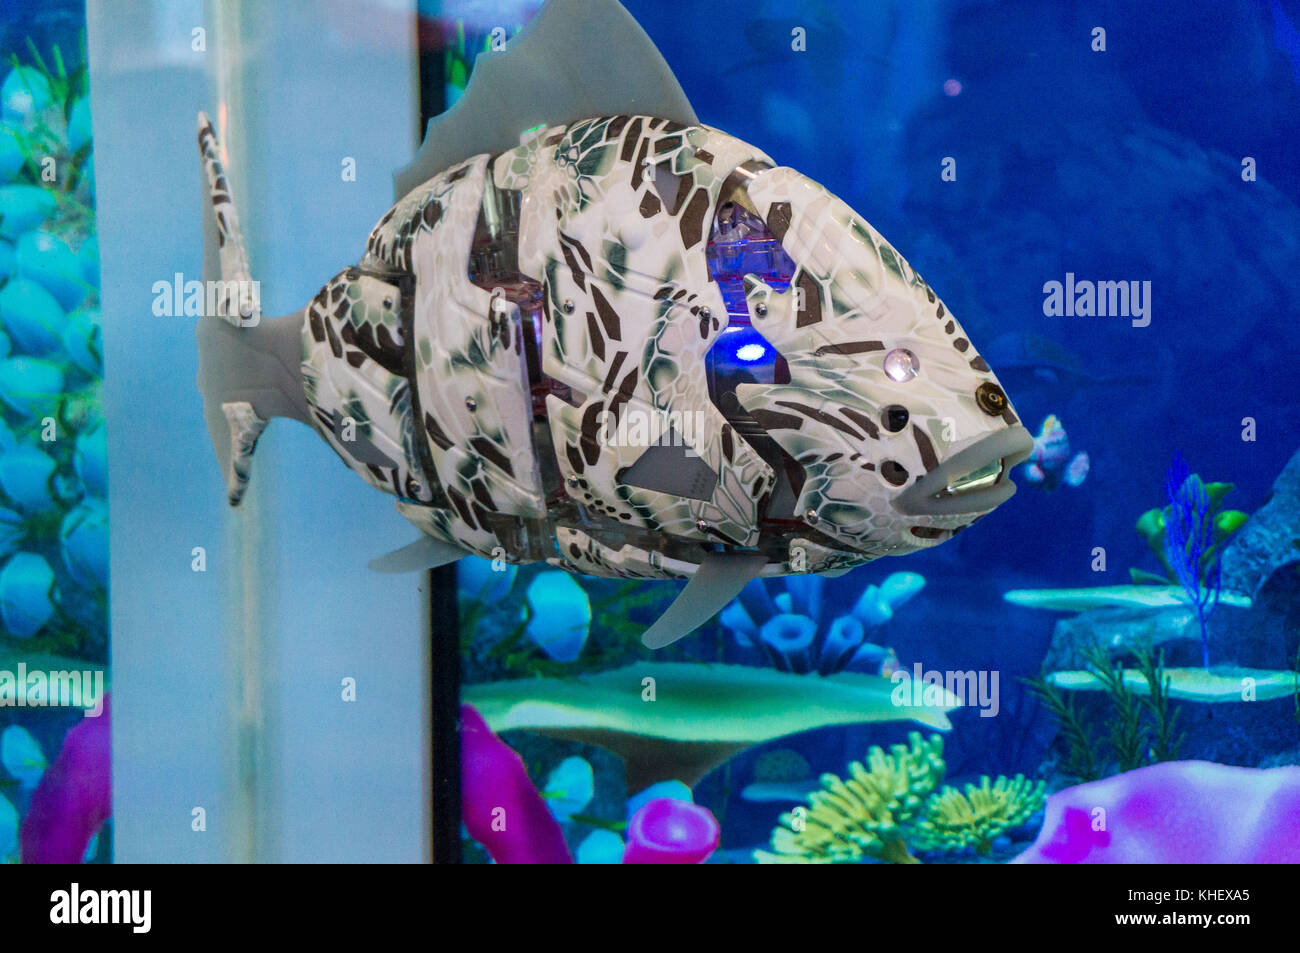 Swimming Robot Fish Banque d'image et photos - Alamy